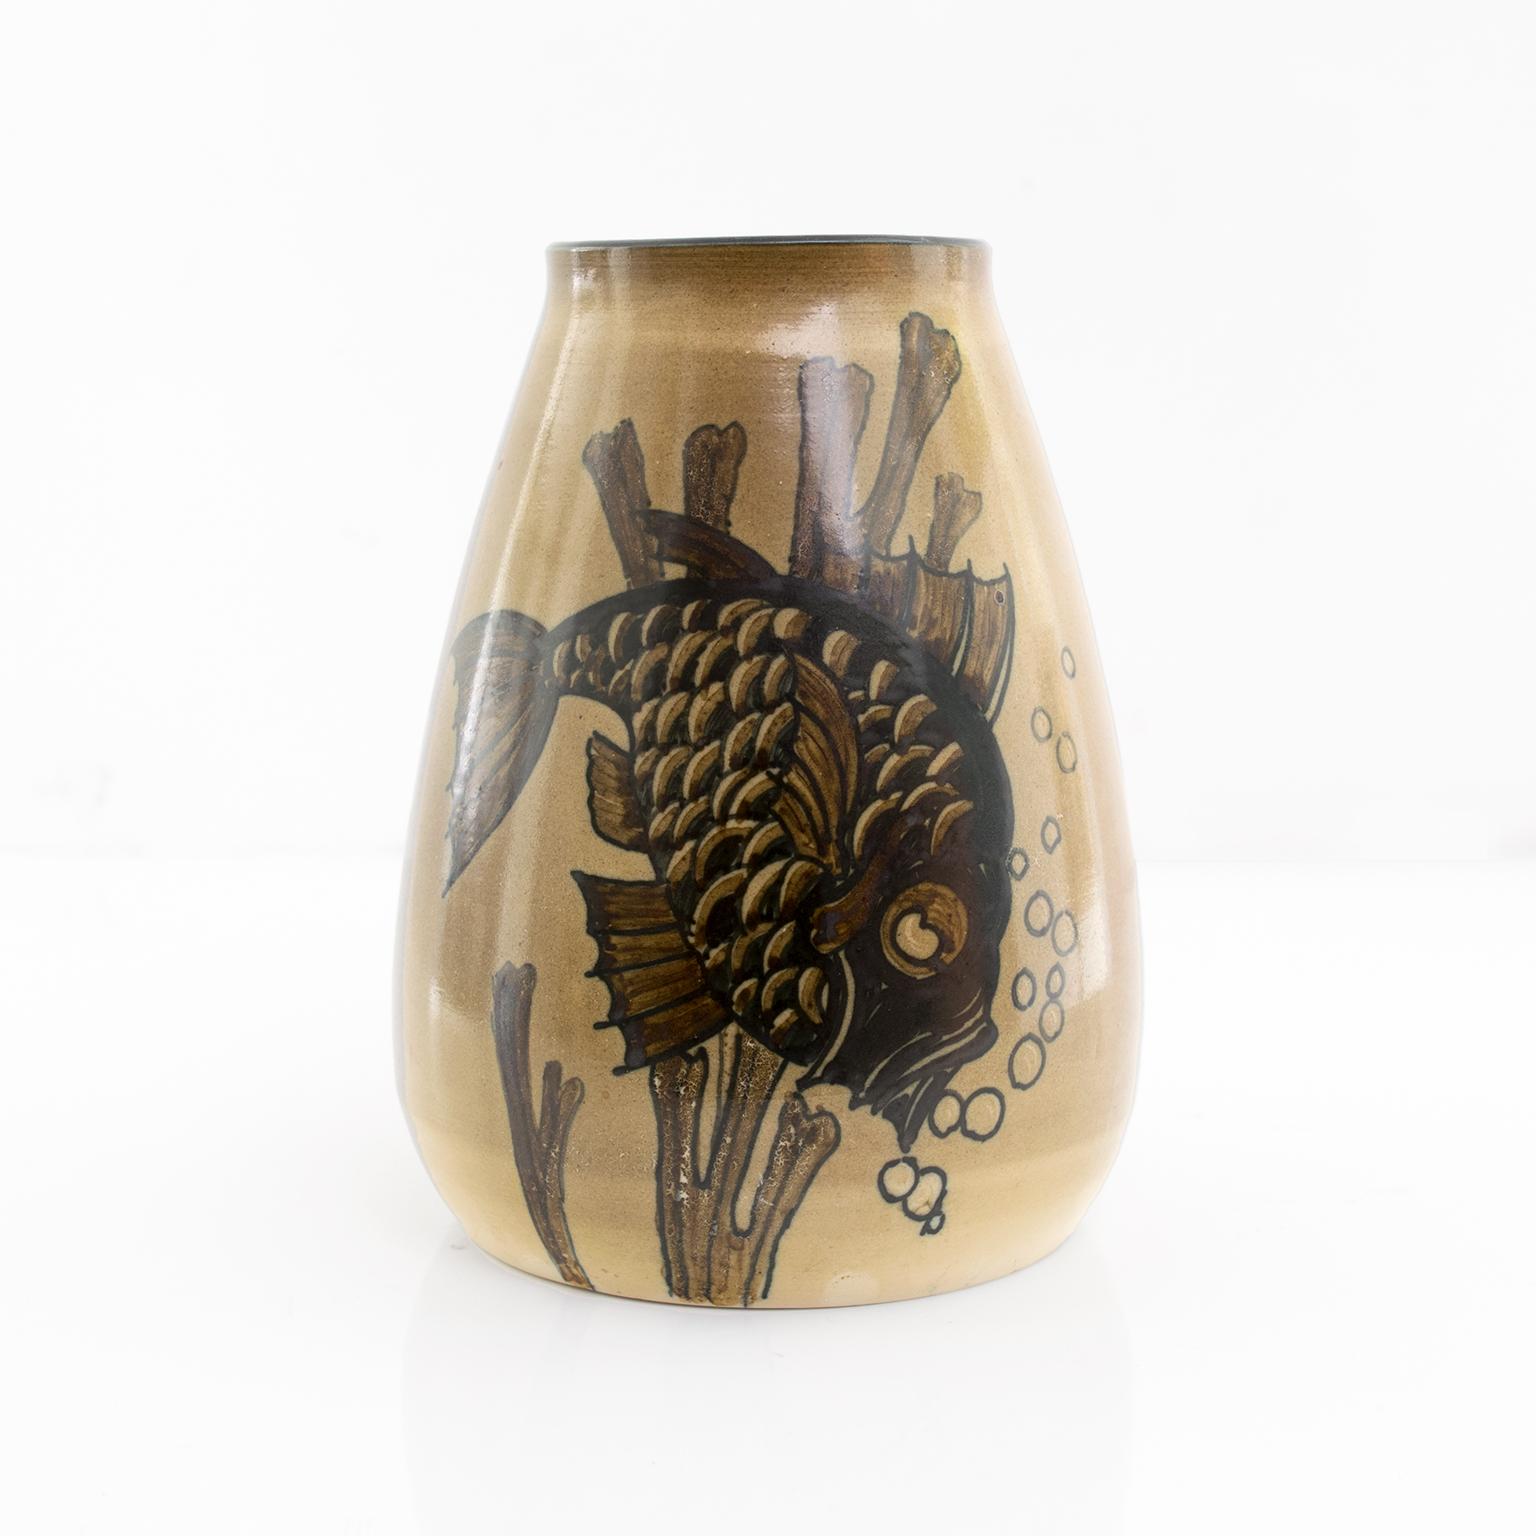 Einzigartige skandinavische moderne handgedrehte und dekorierte schwedische Art Deco Vase von Josef Ekberg, die einen Fisch unter Wasser darstellt. Hergestellt in Gustavsberg, um 1930.

Maße: Höhe: 7,75